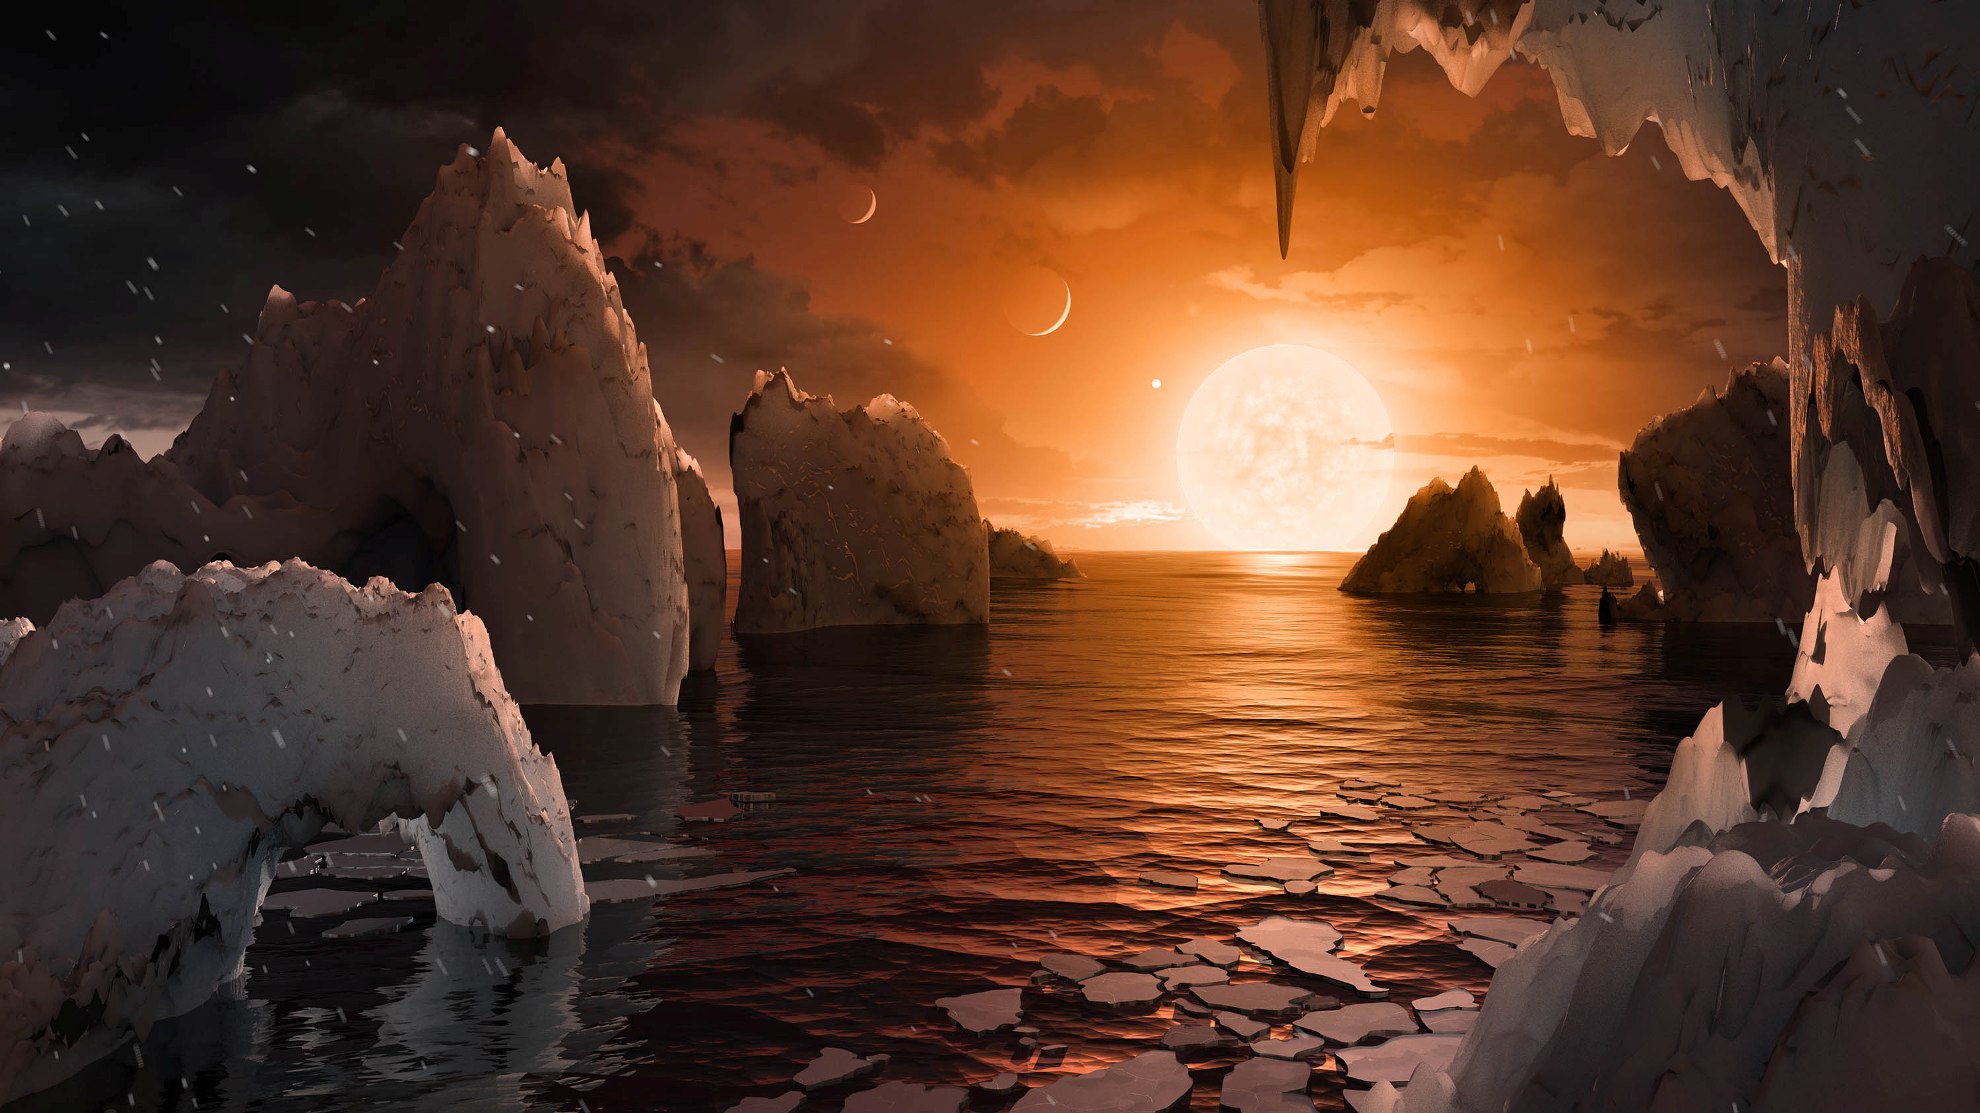 Une vue de la surface de l'exoplanète Trappist-1f, qui pourrait être habitable et colonisée par une civilisation extraterrestre. © Nasa, JPL-Caltech T. Pyle IPAC